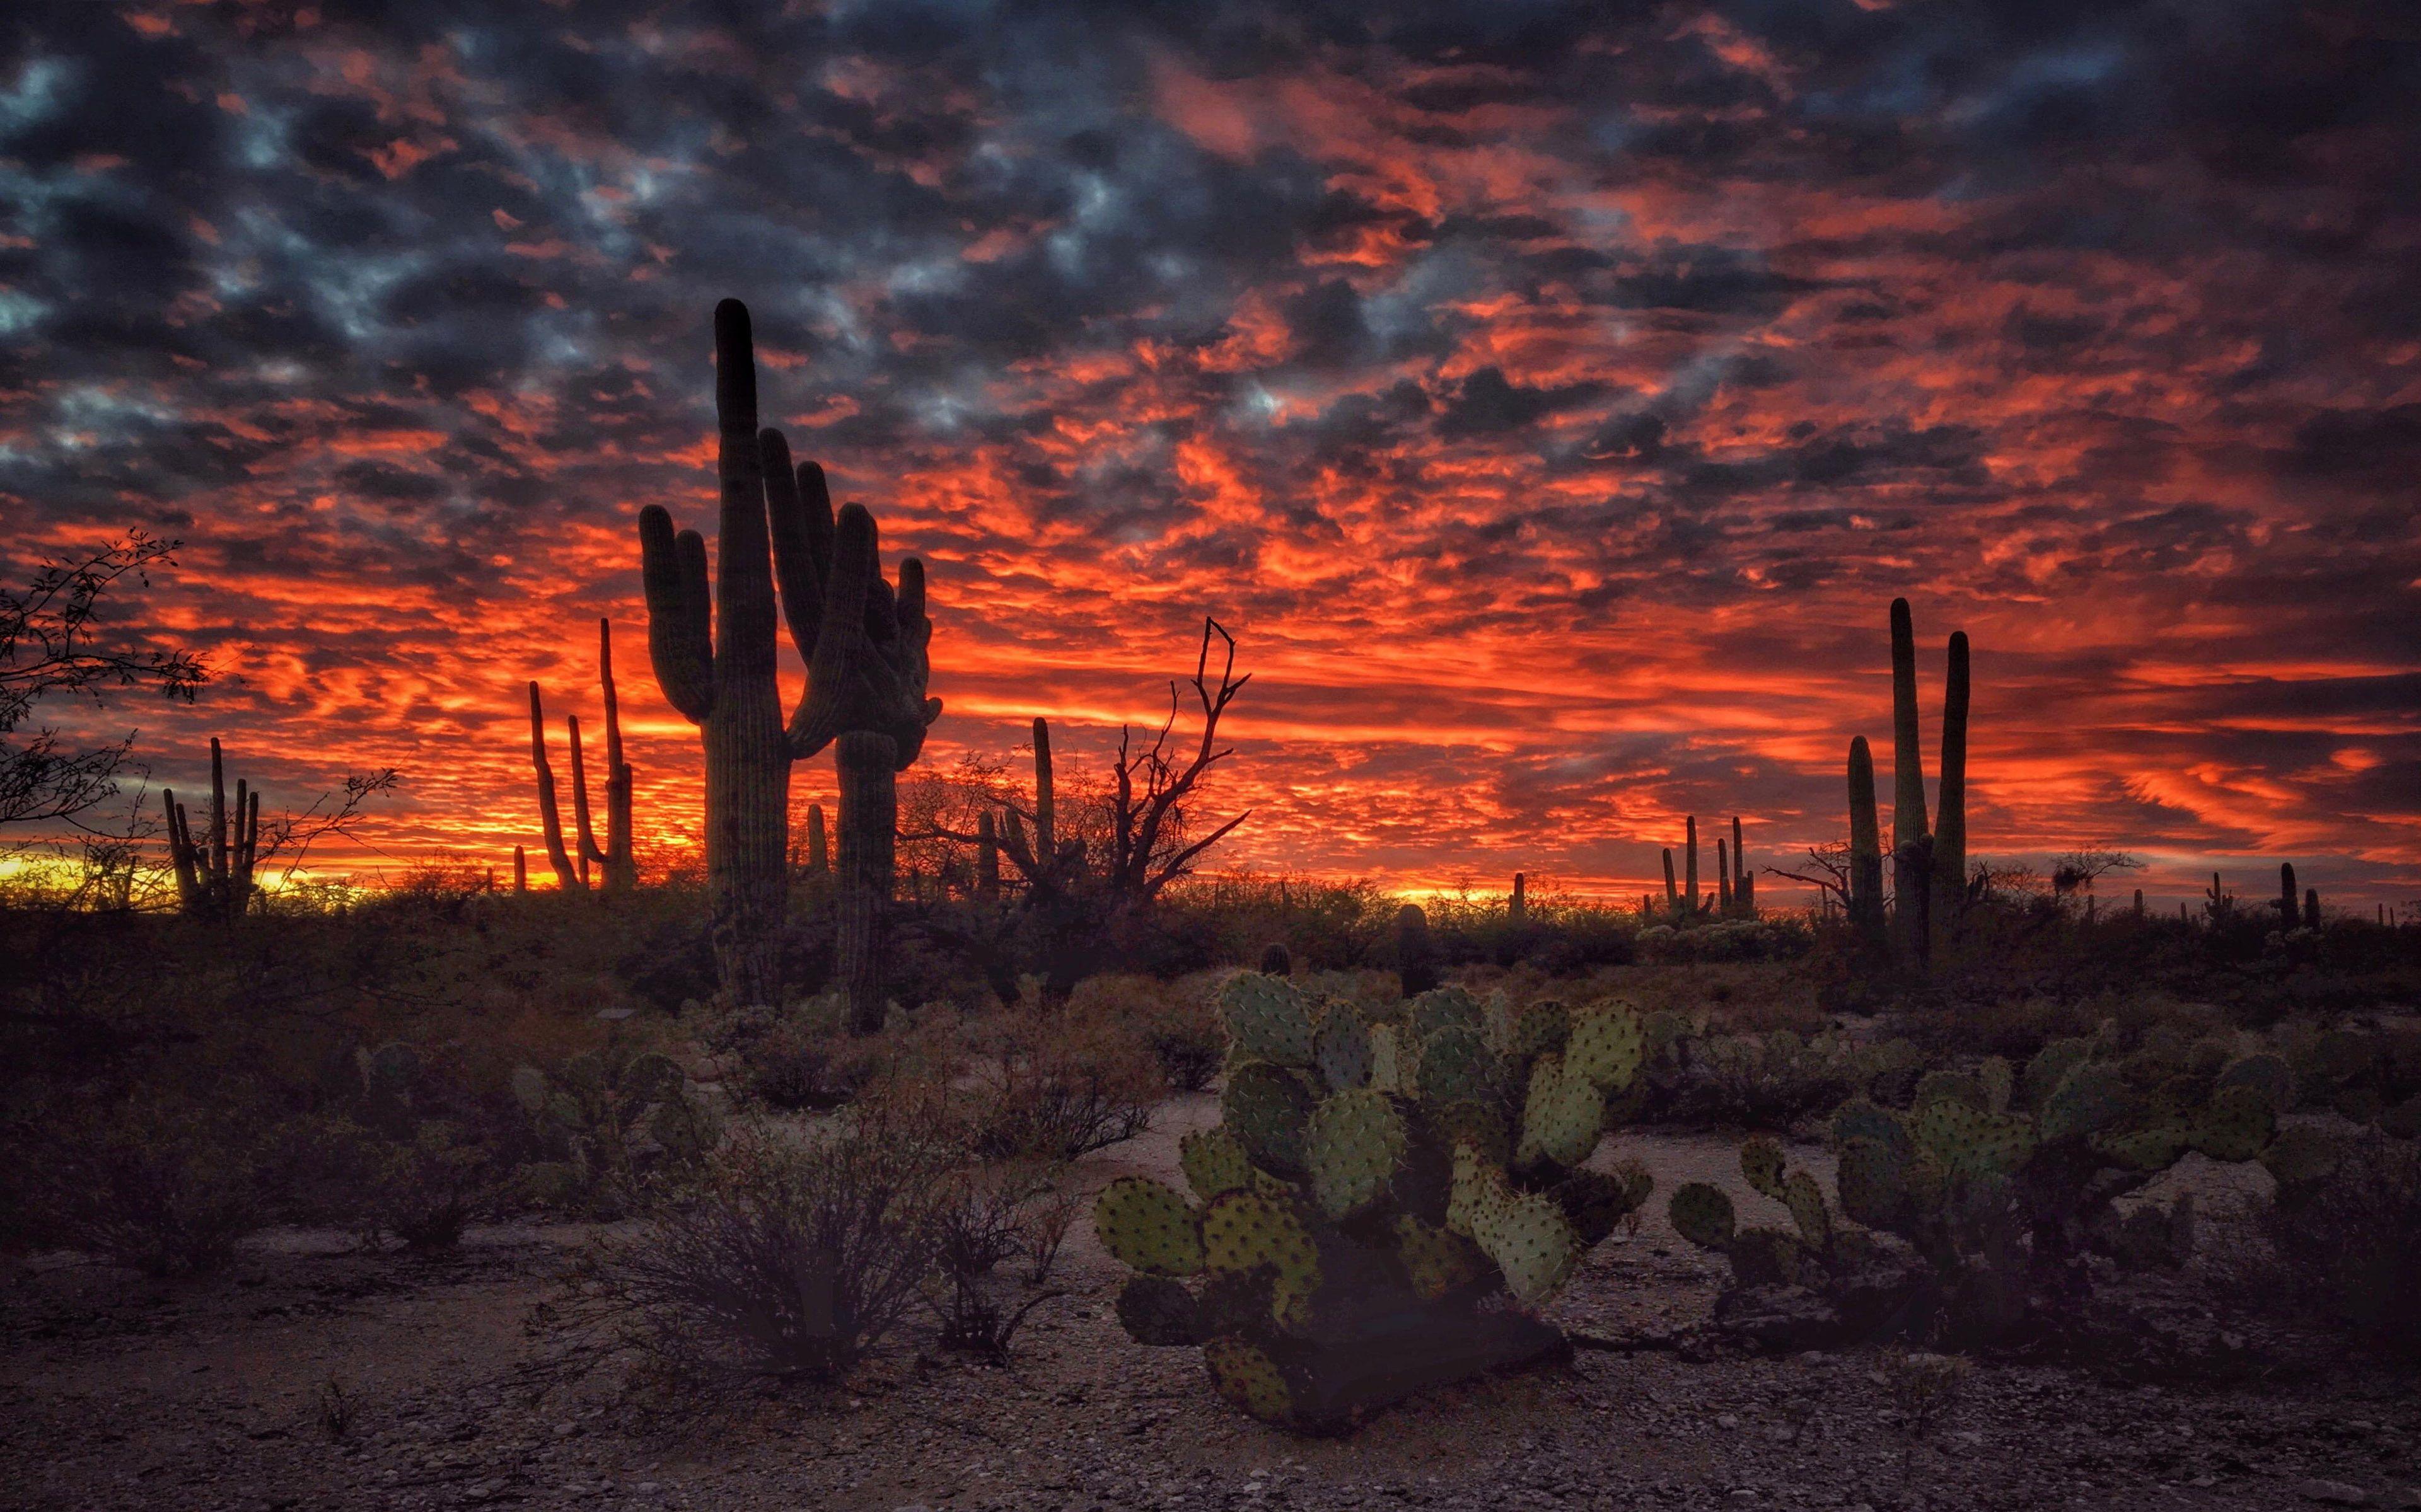 Tucson Arizona Sunset Flaming Sky Desert Landscape With Cactus